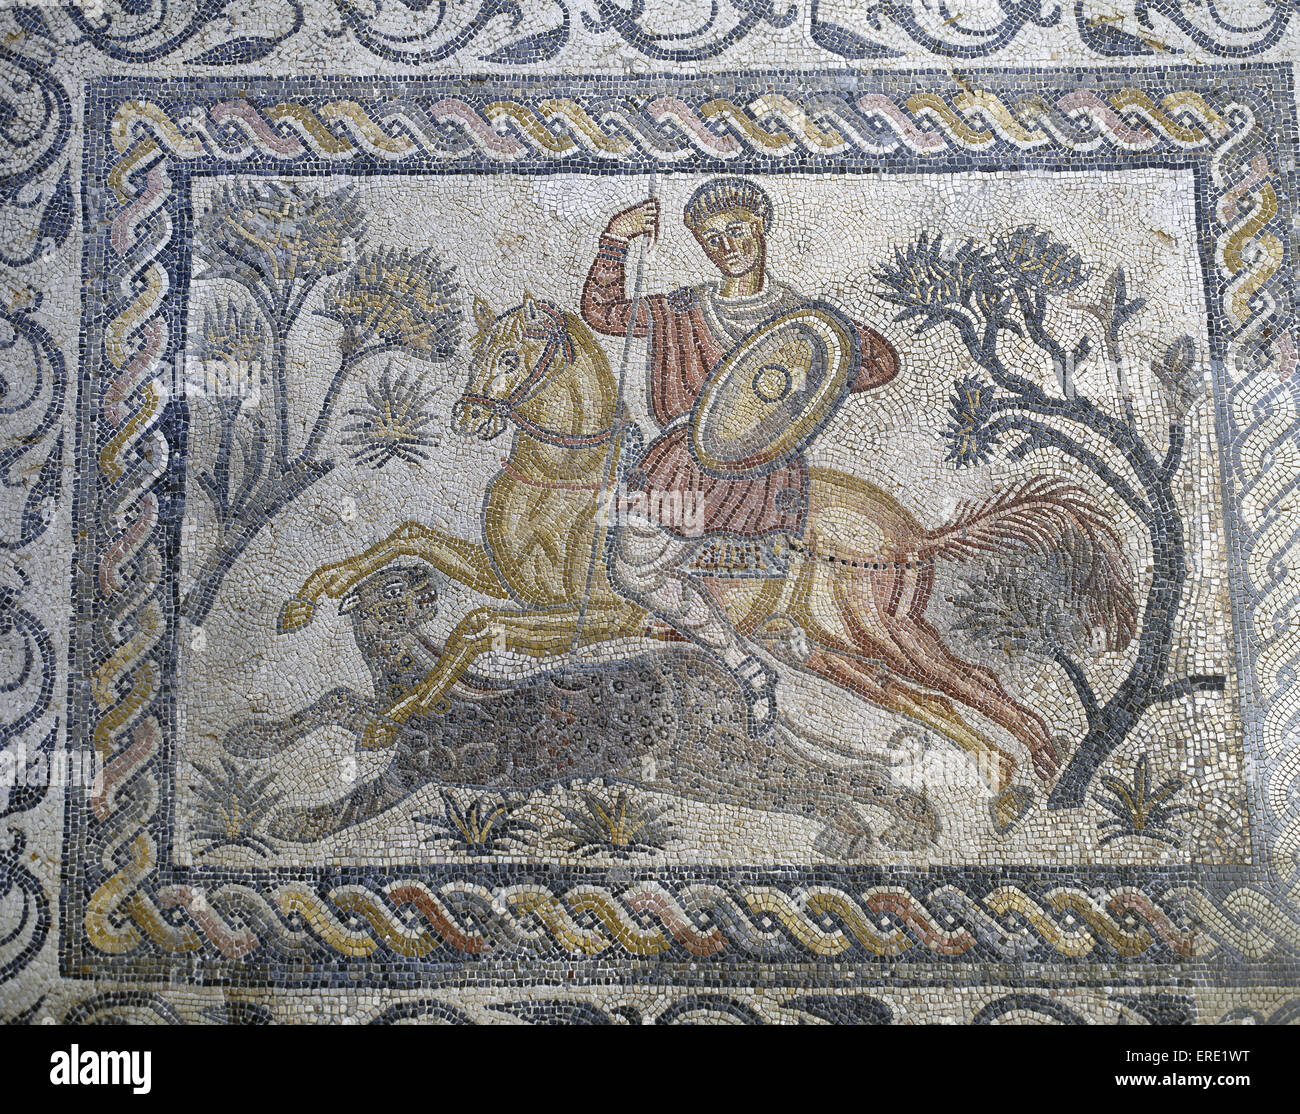 Mosaik von Panther jagen von Roman Villa Las Tiendas in Merida, Spanien, römische Zivilisation, 4. Jahrhundert. National Museum of Roman Art. Merida. Spanien. Stockfoto